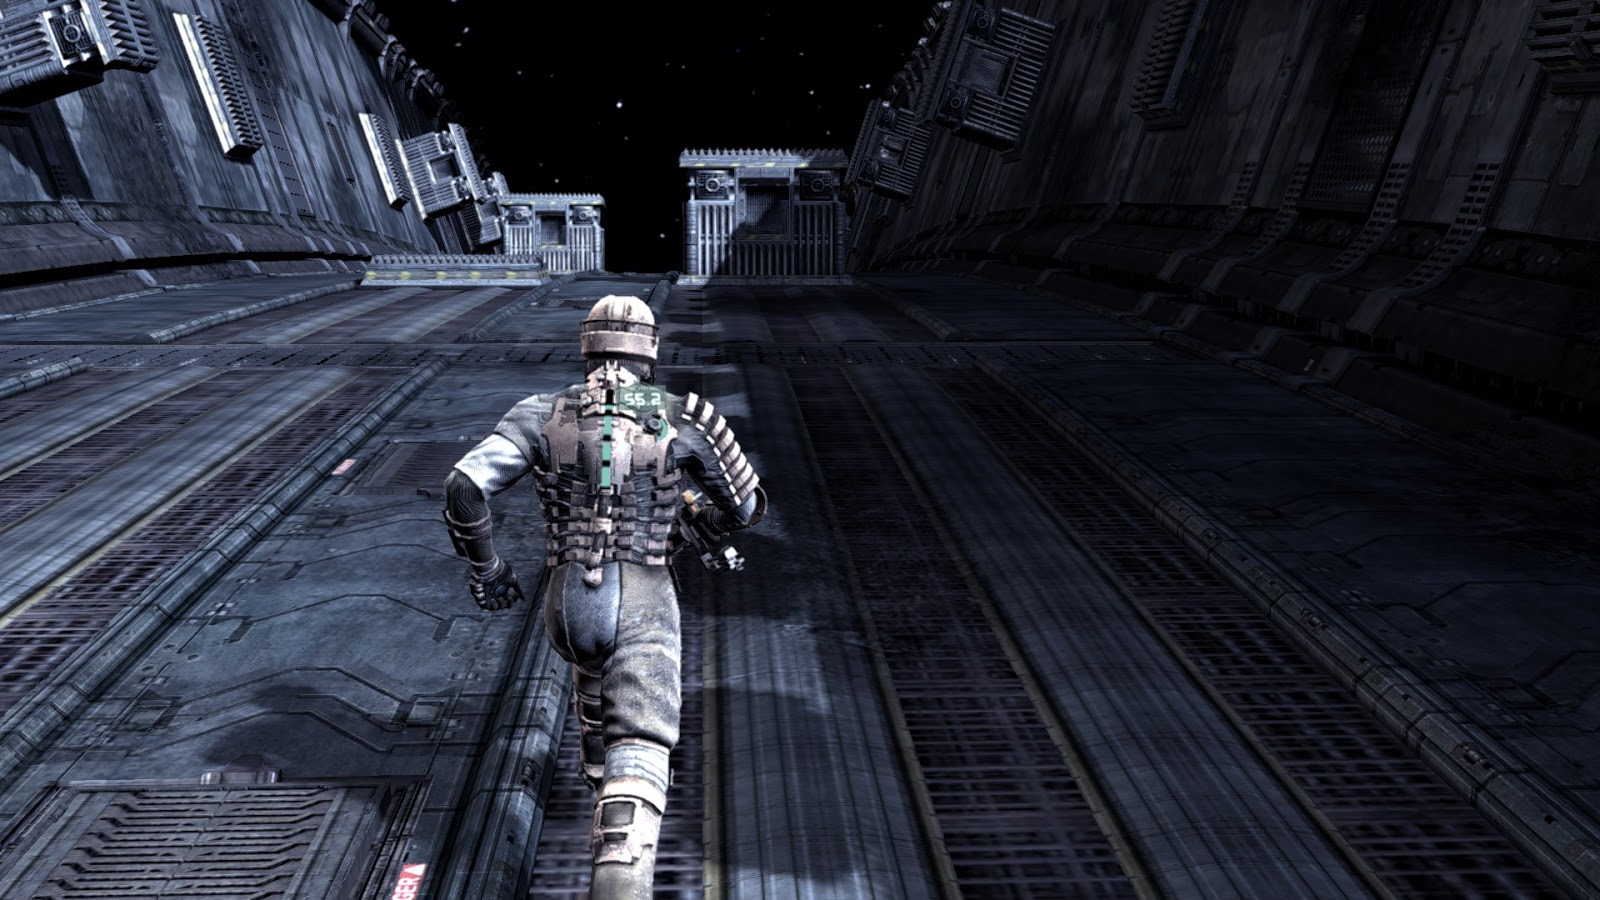 Dead Space 2 Retrospective Review - GameCloud